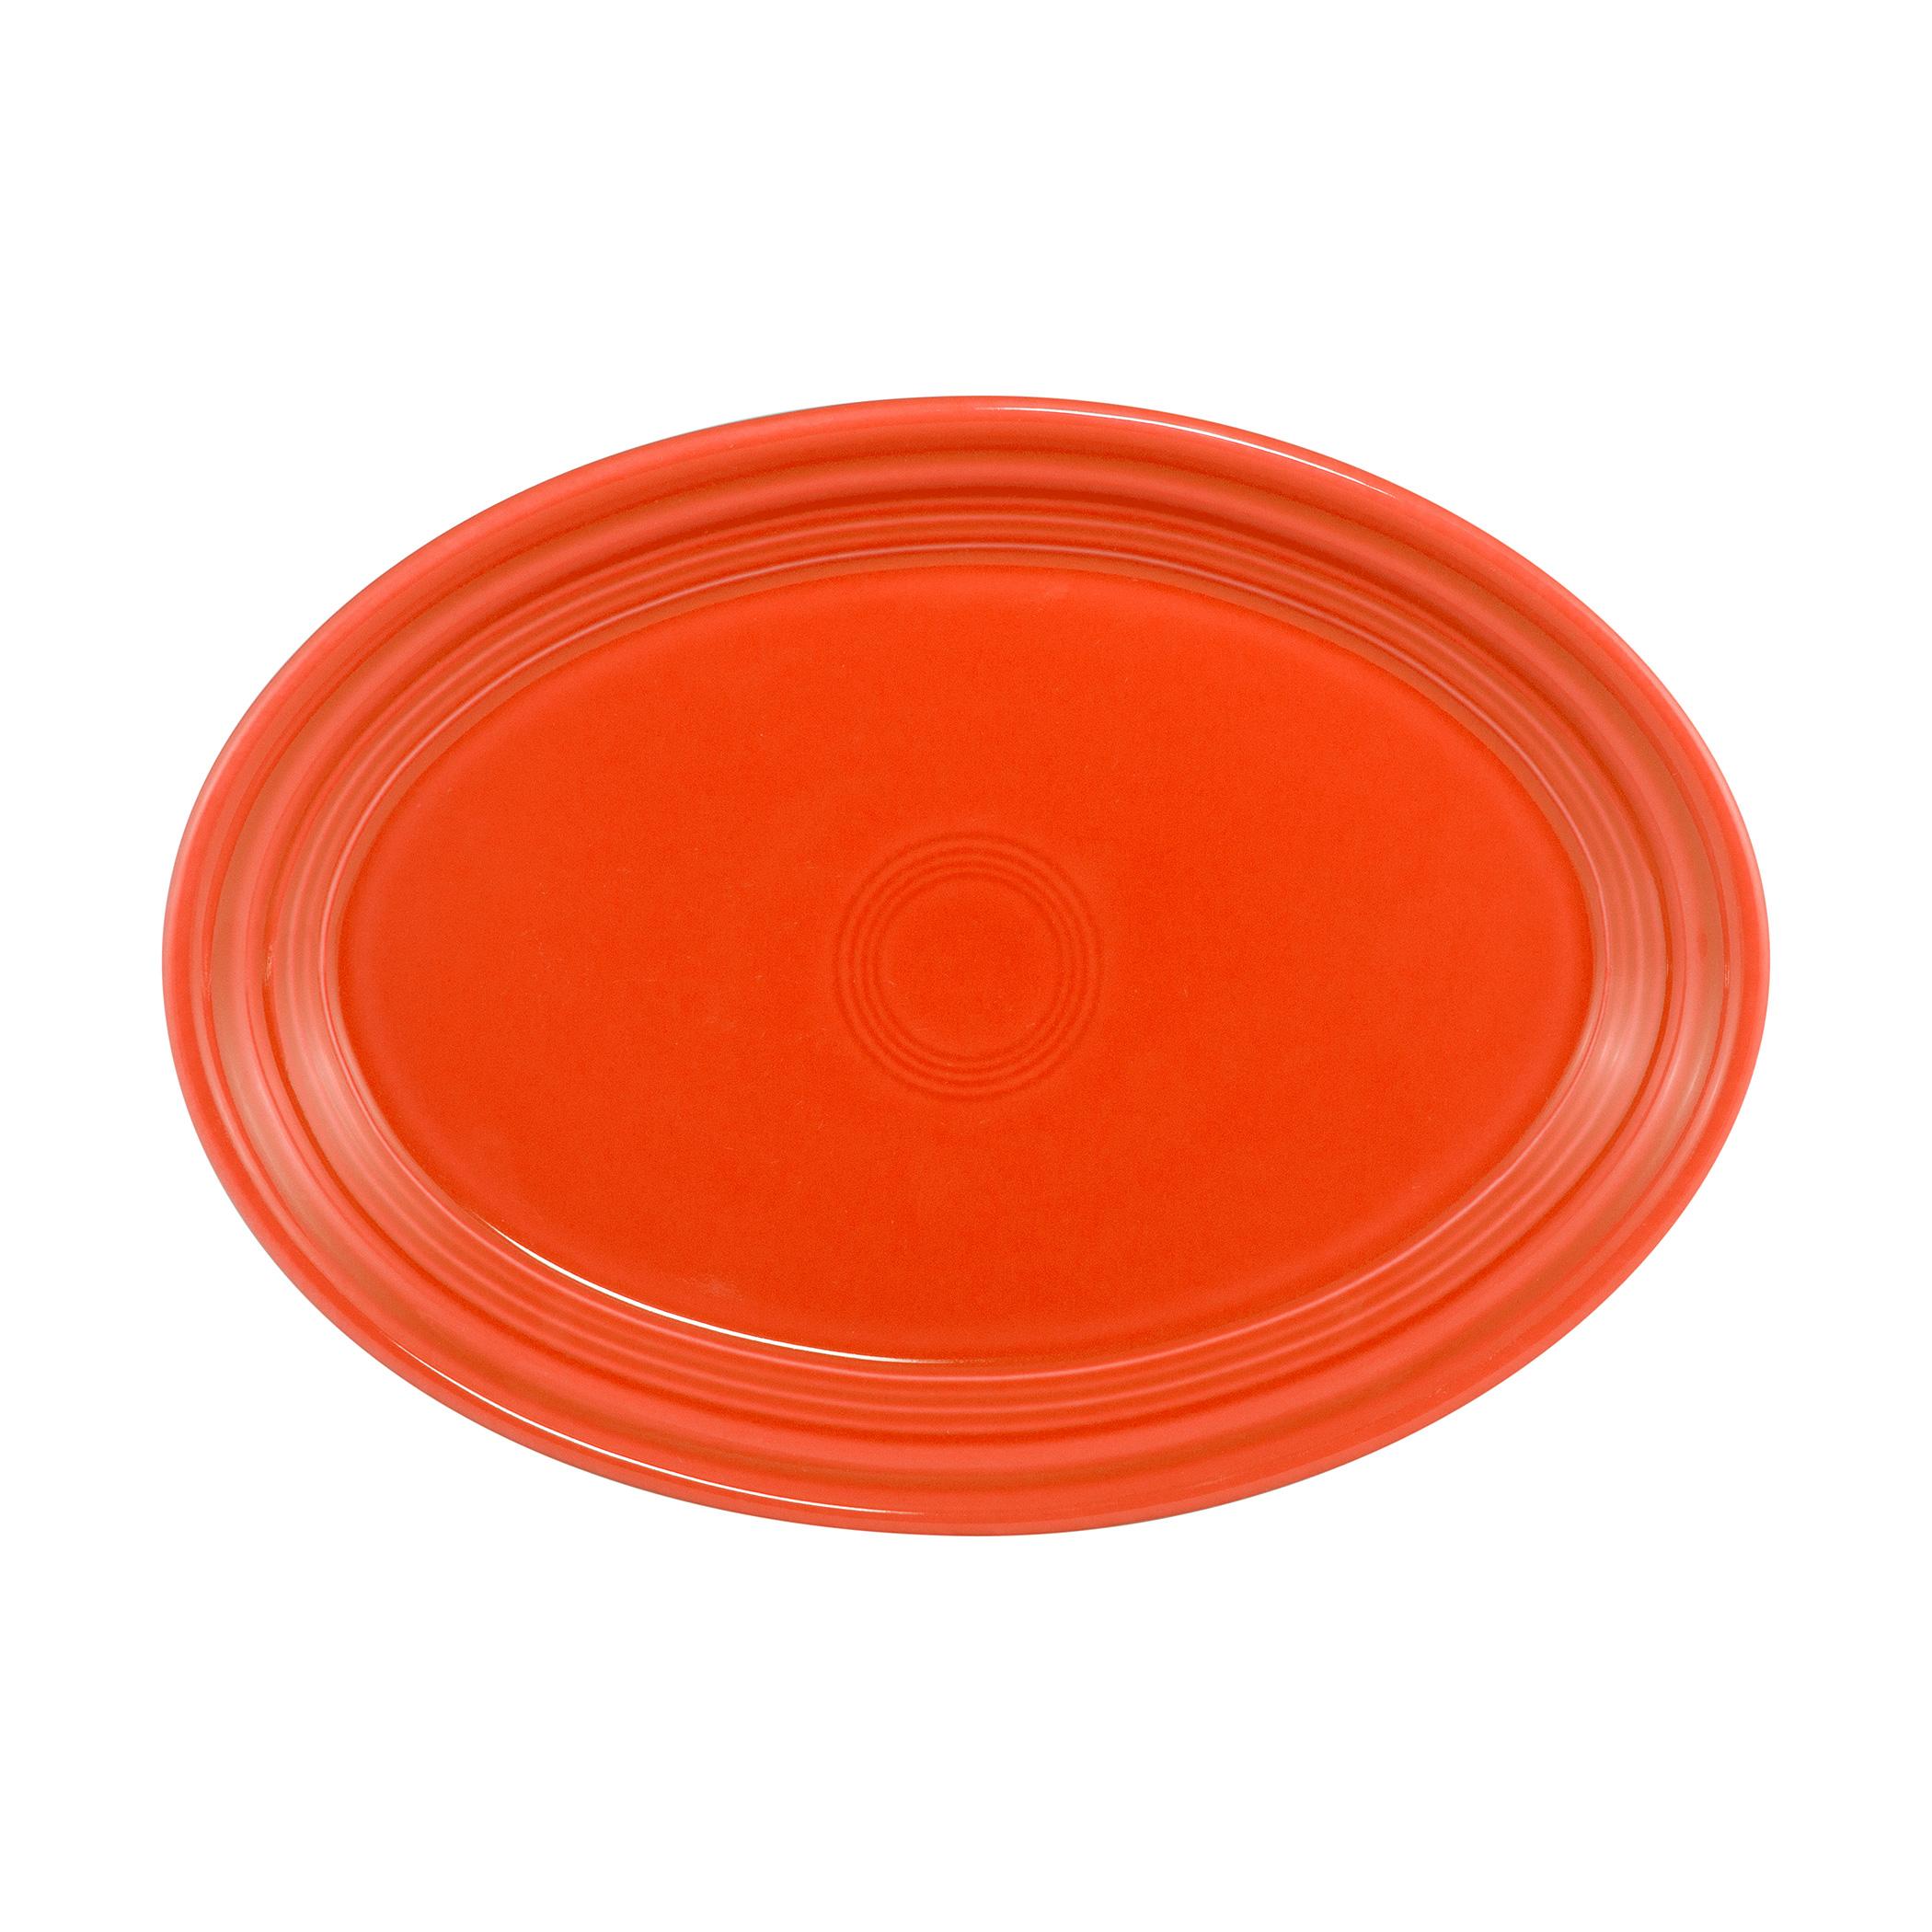  Oval Platter